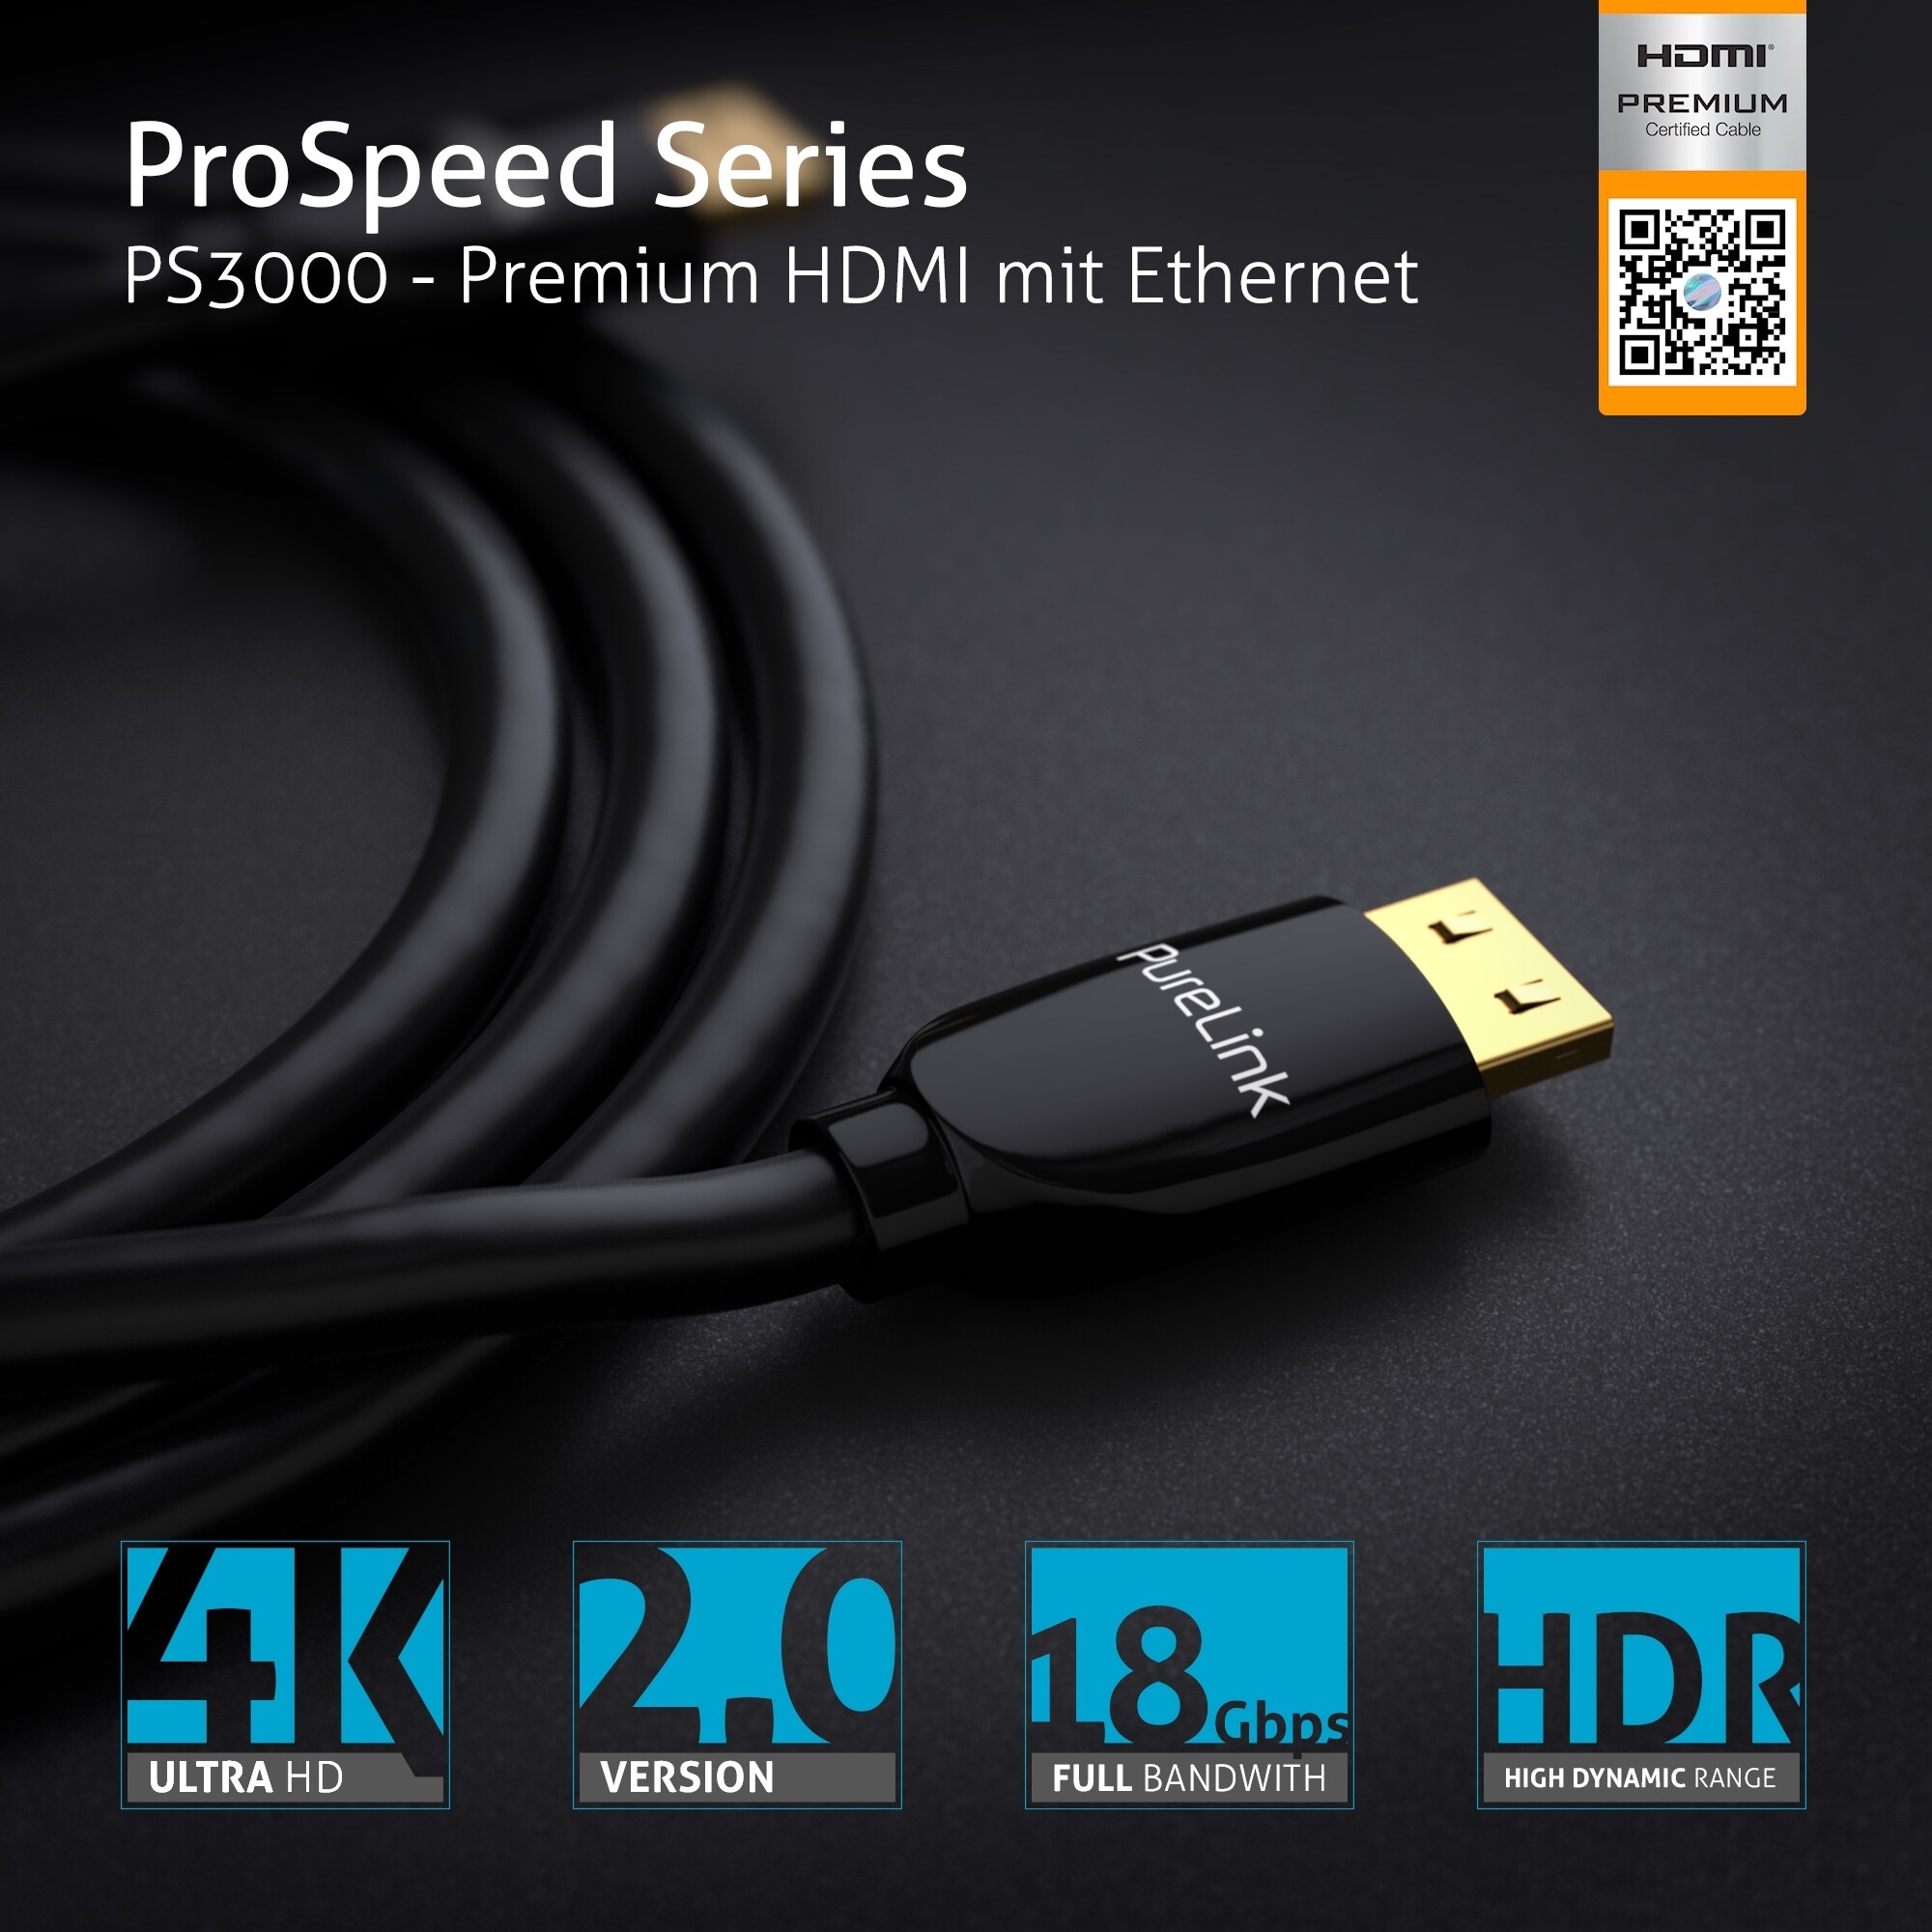 PureLink-PS3000-Premium-Highspeed-HDMI-Kabel-mit-Ethernet-Zertifiziert-1-50m